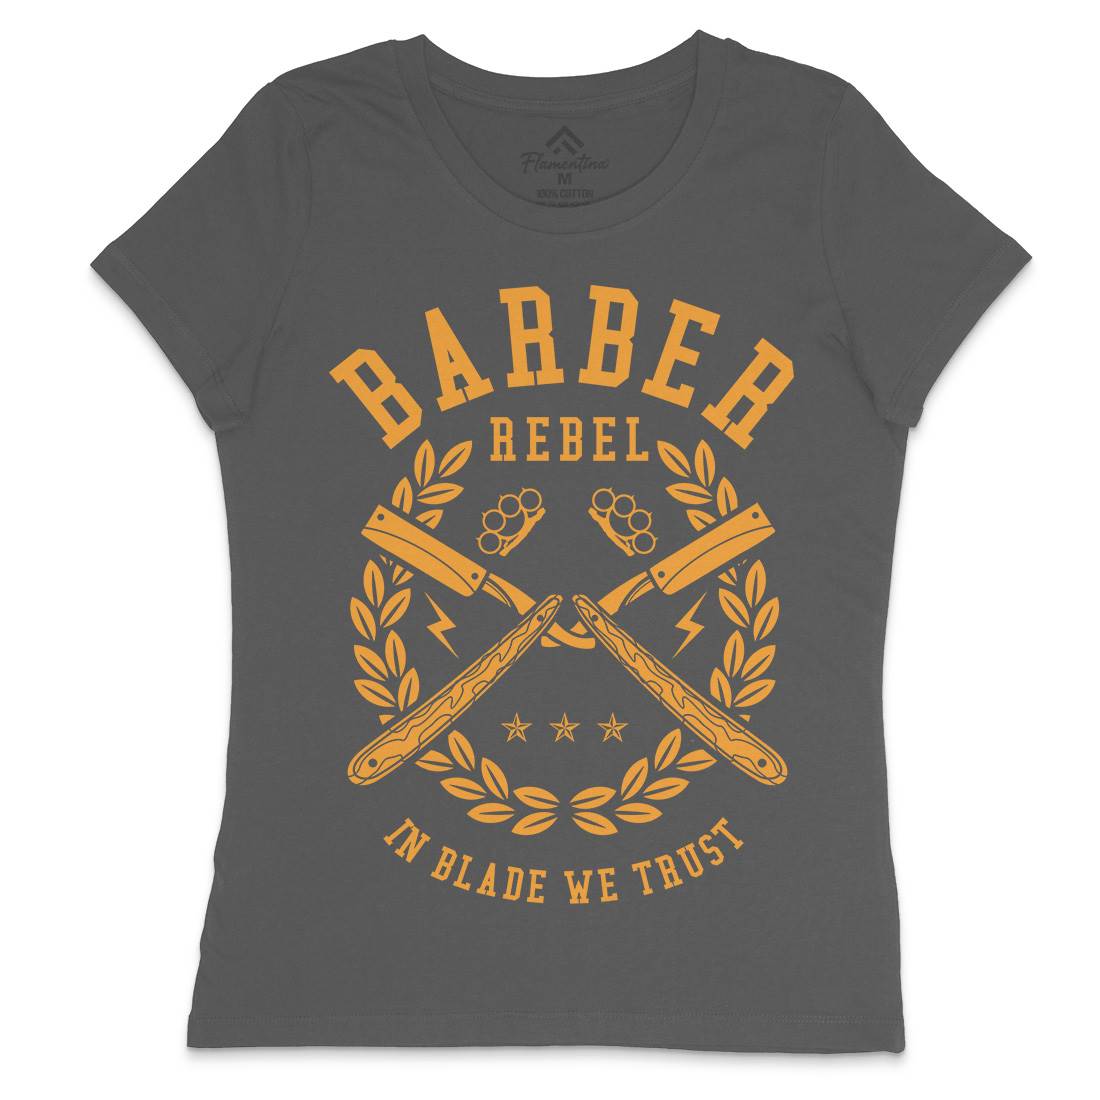 Rebel Womens Crew Neck T-Shirt Barber A203